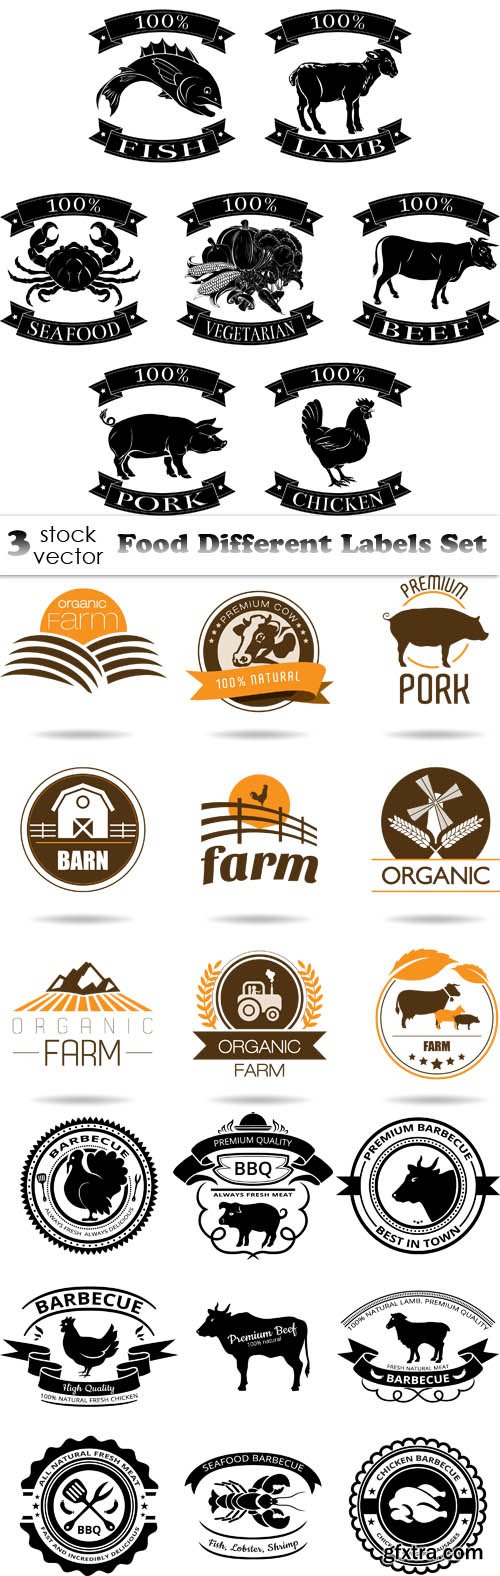 Vectors - Food Different Labels Set